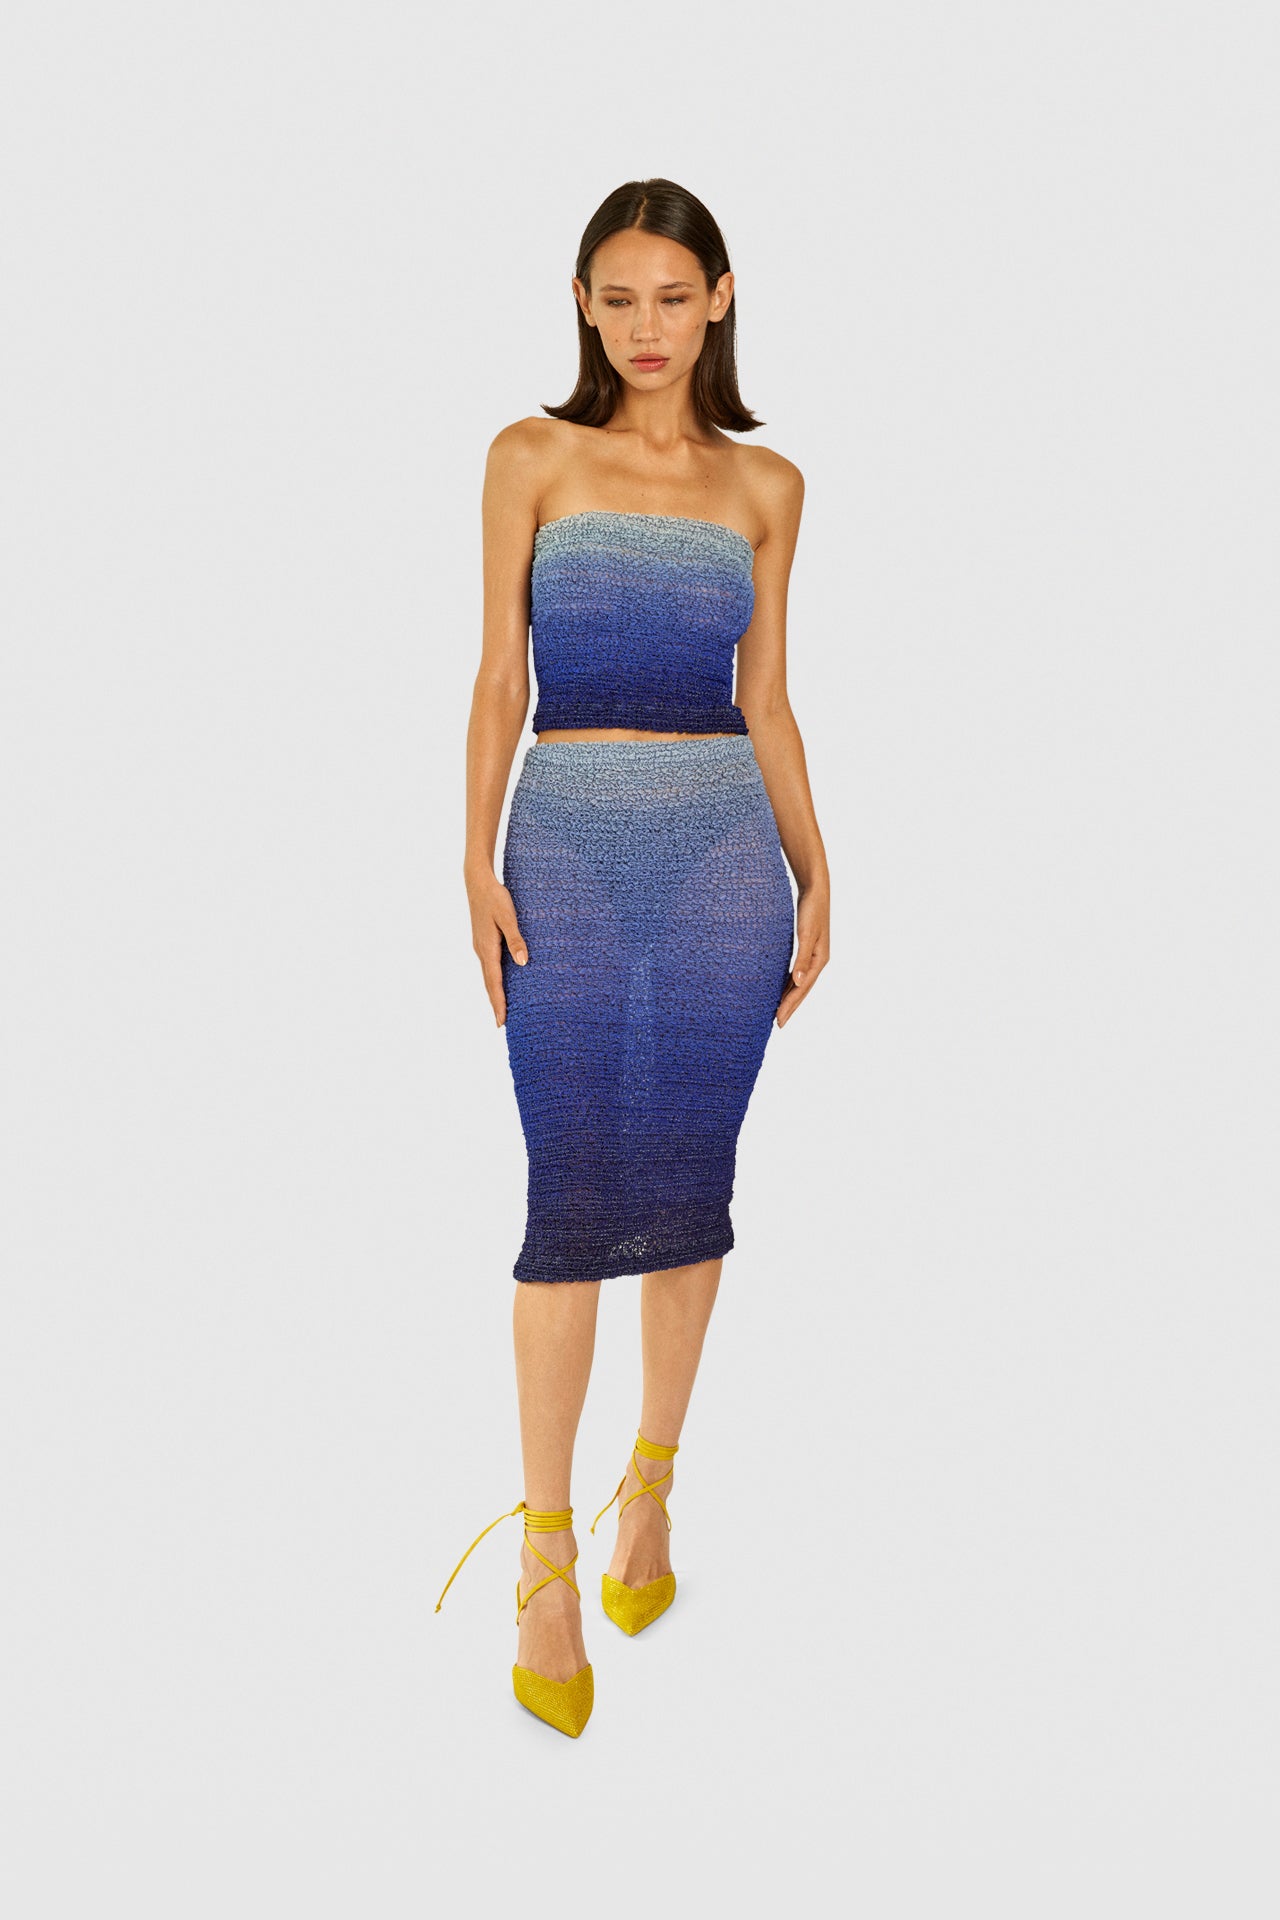 Aqua Nido Silk Dress - Product - Hanne Bloch CollectionAqua Nido Silk Dress - Product - Hanne Bloch Collection